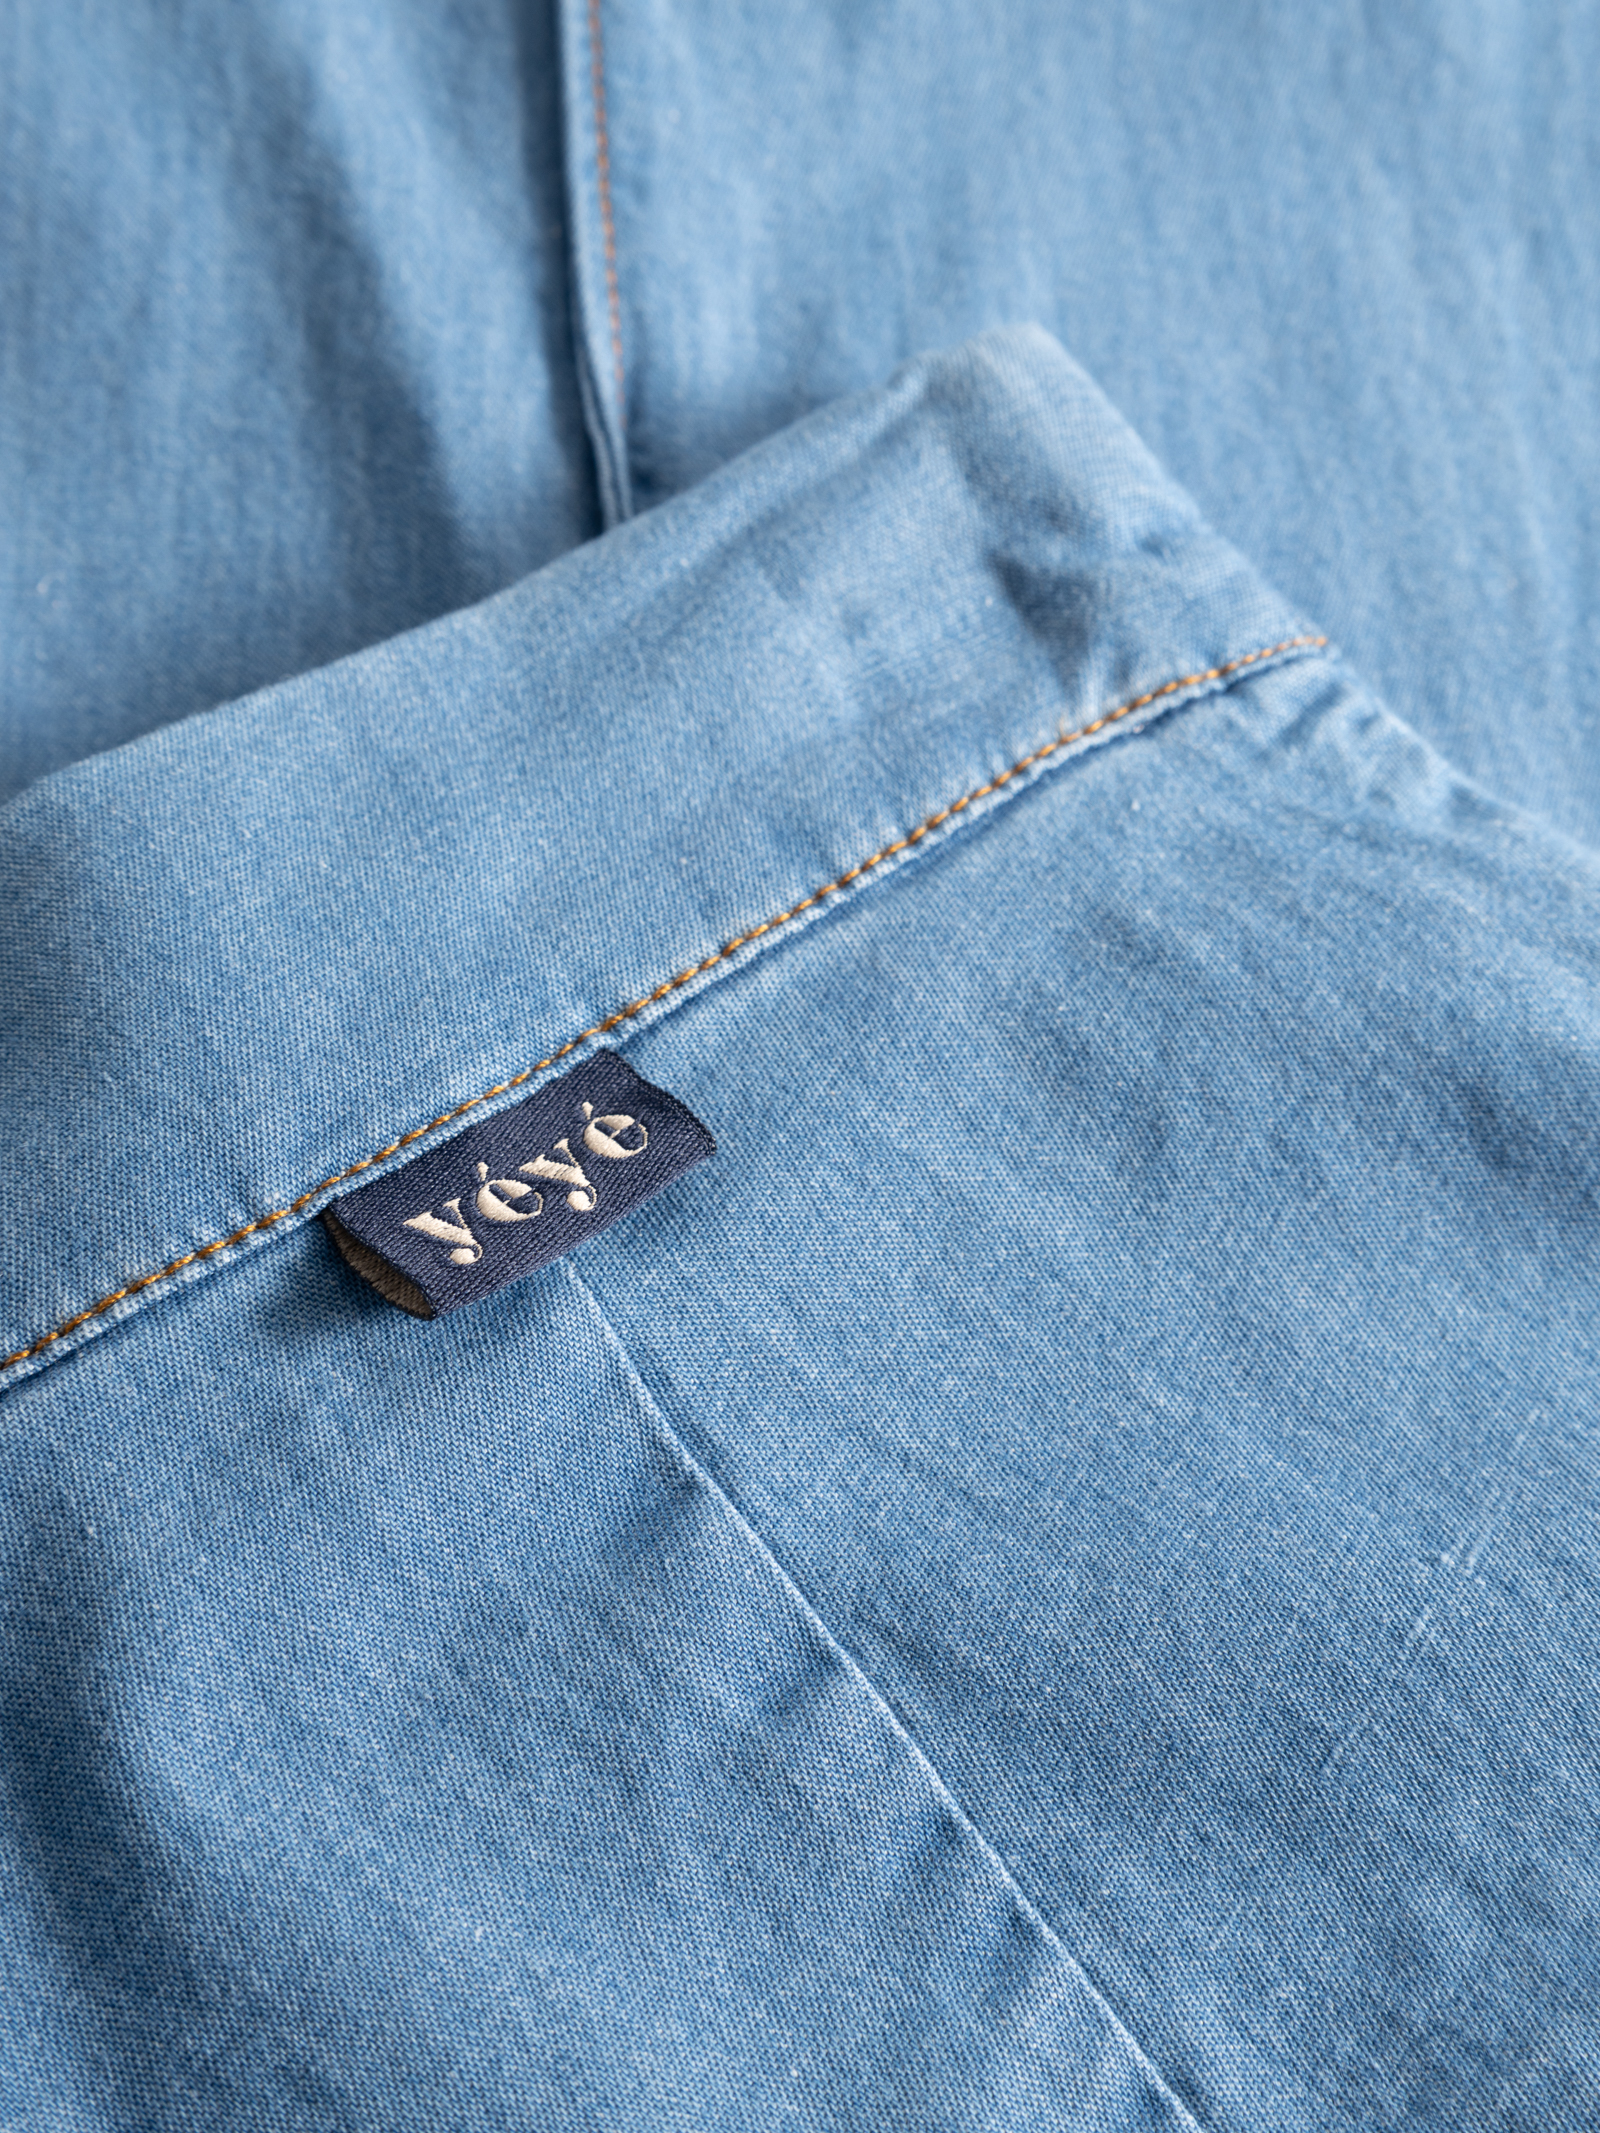 boardwalk trousers blue